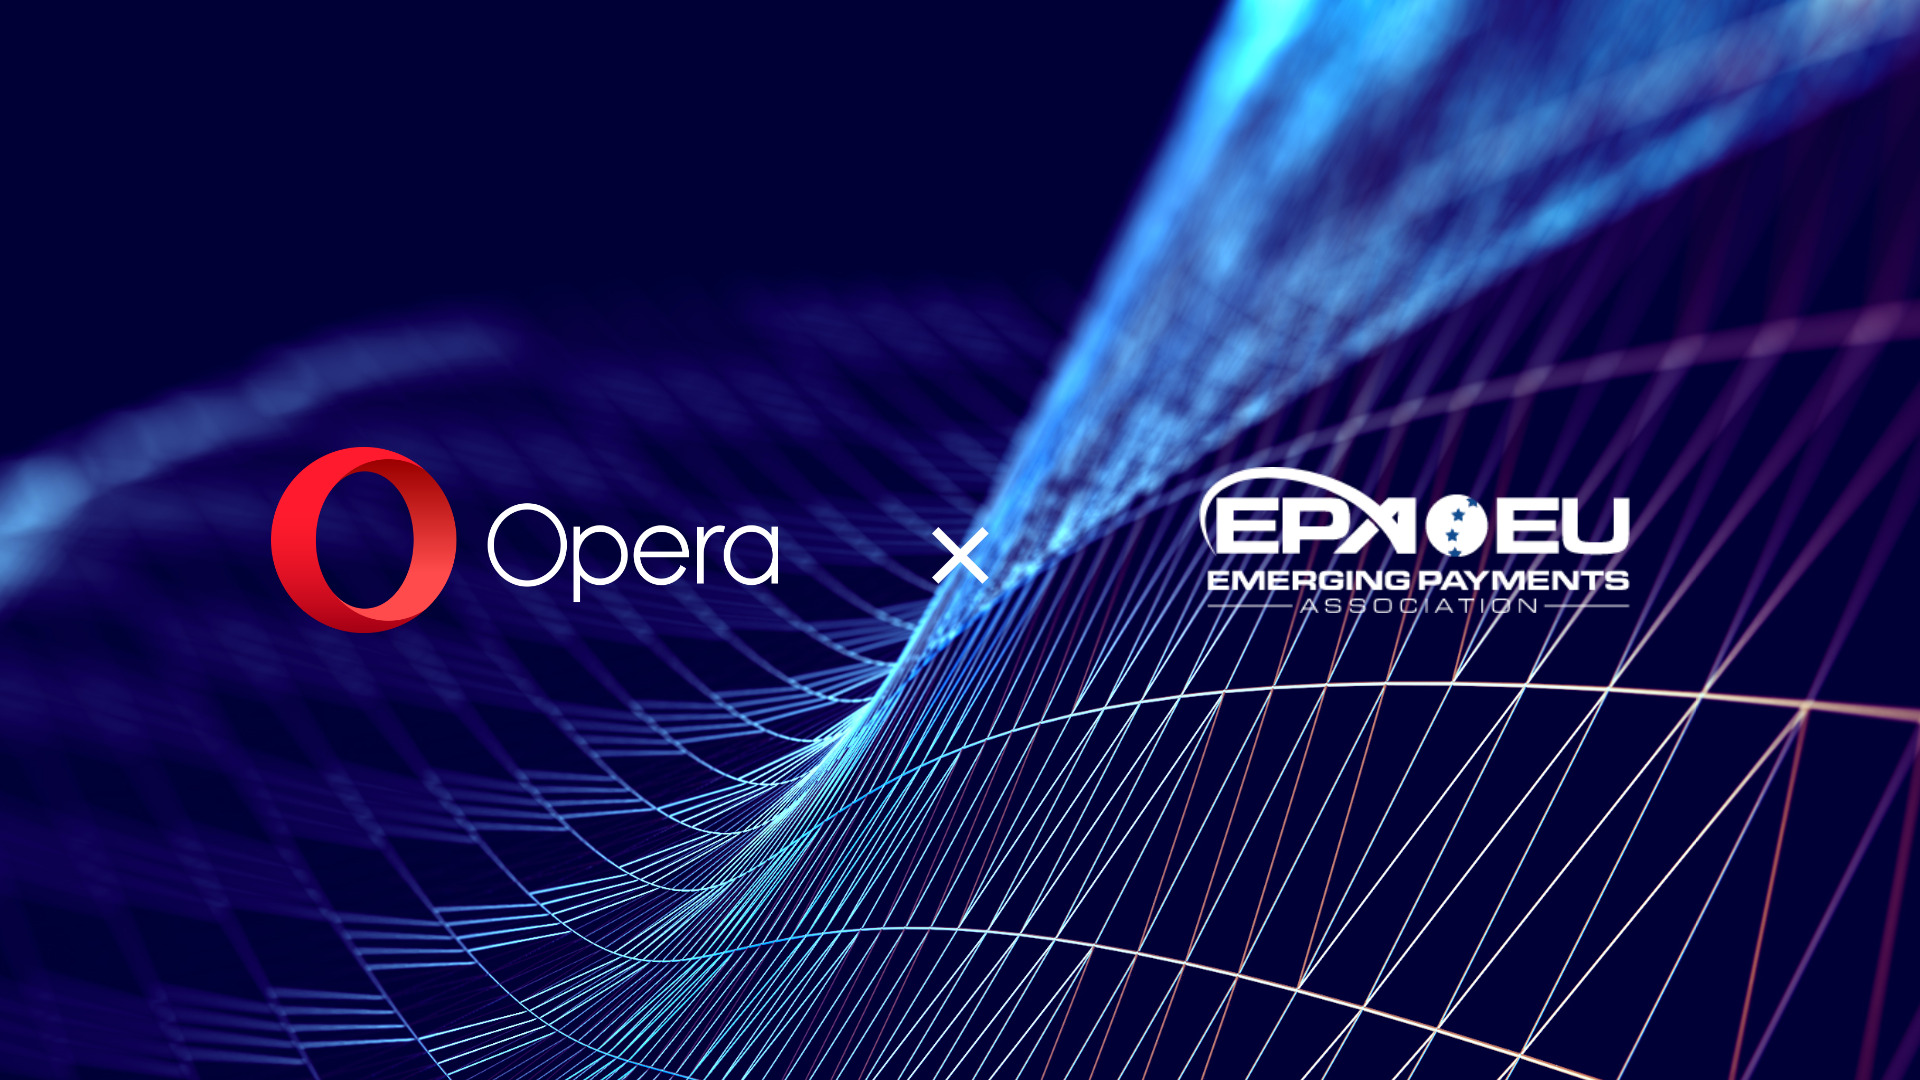 Opera joins emerging payments association EU